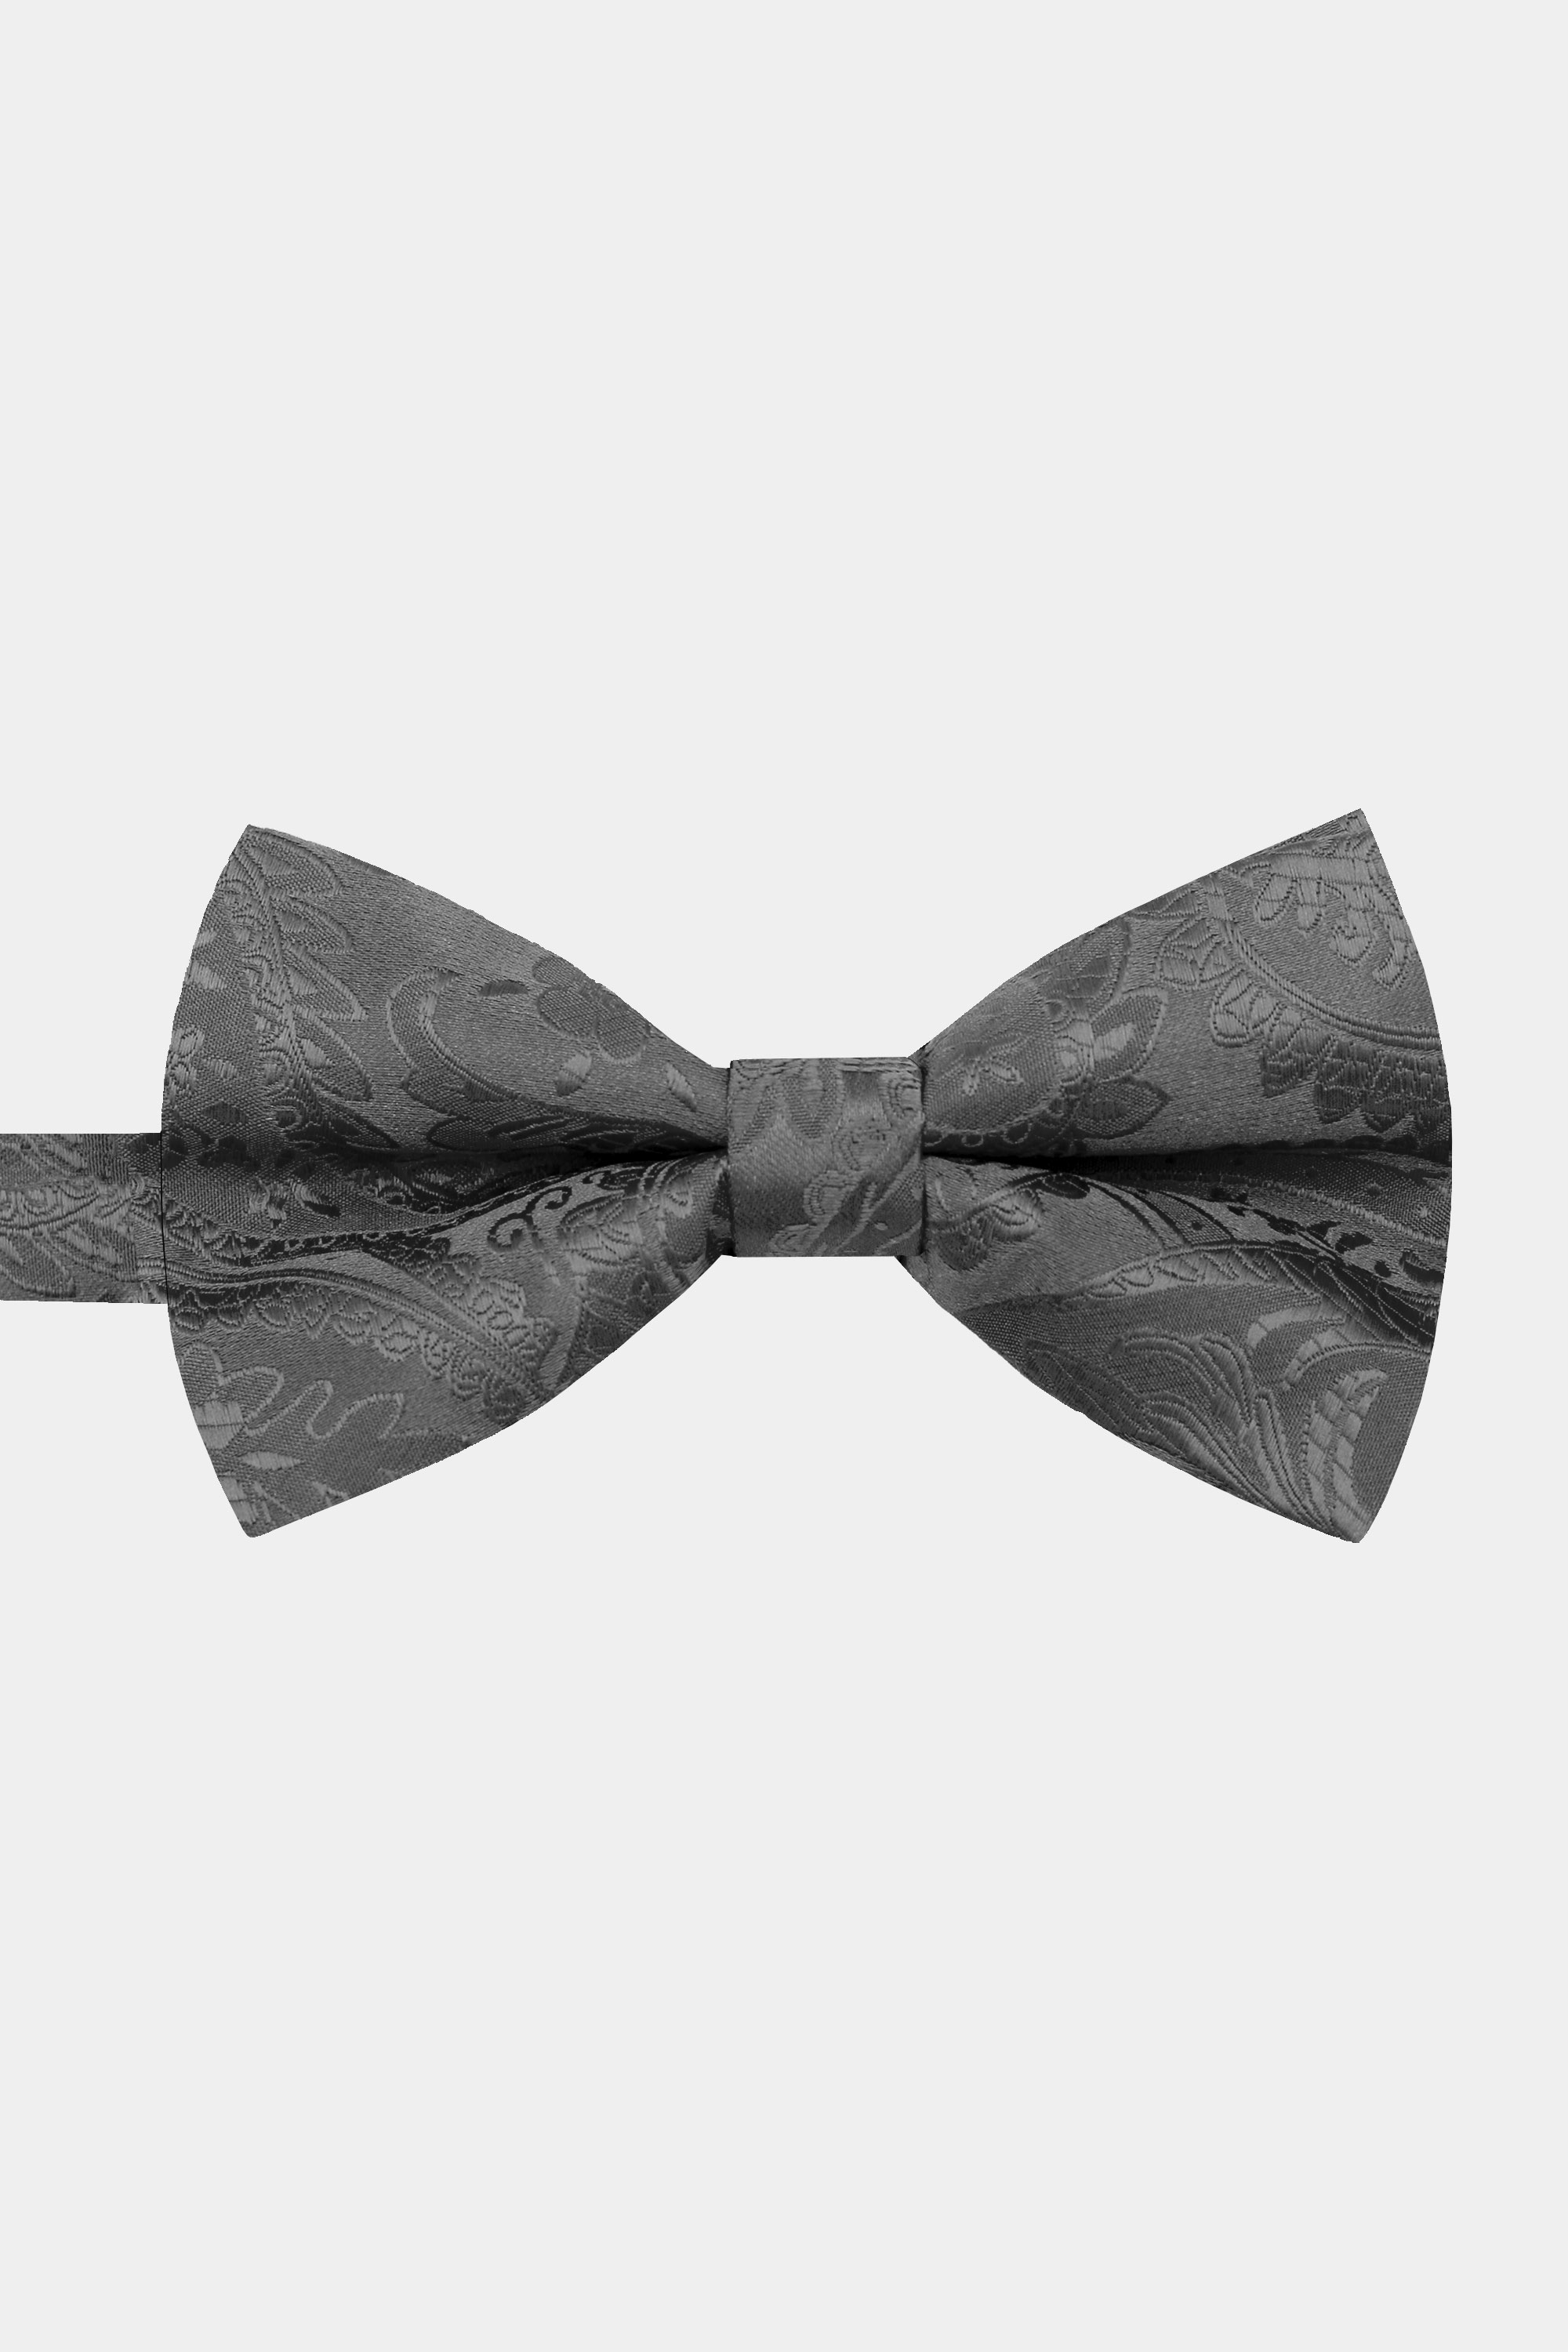 Grey-Paisley-Bow-Tie-from-Gentlemansguru.com